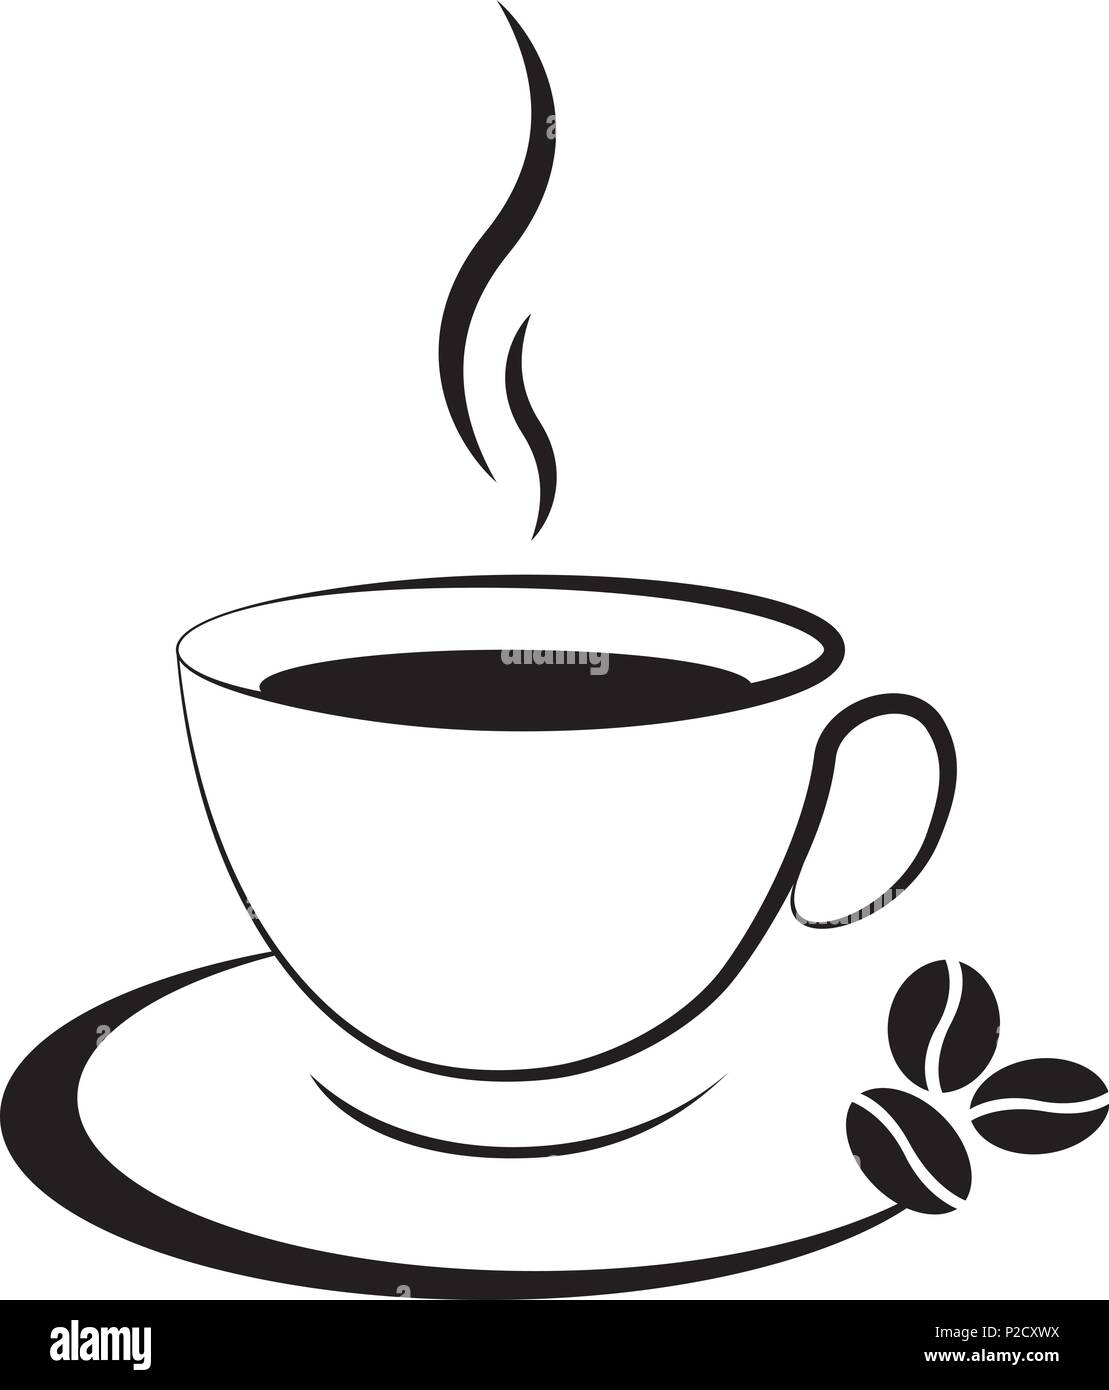 Heiße tasse kaffee Symbol auf weißem Hintergrund Stock-Vektorgrafik - Alamy